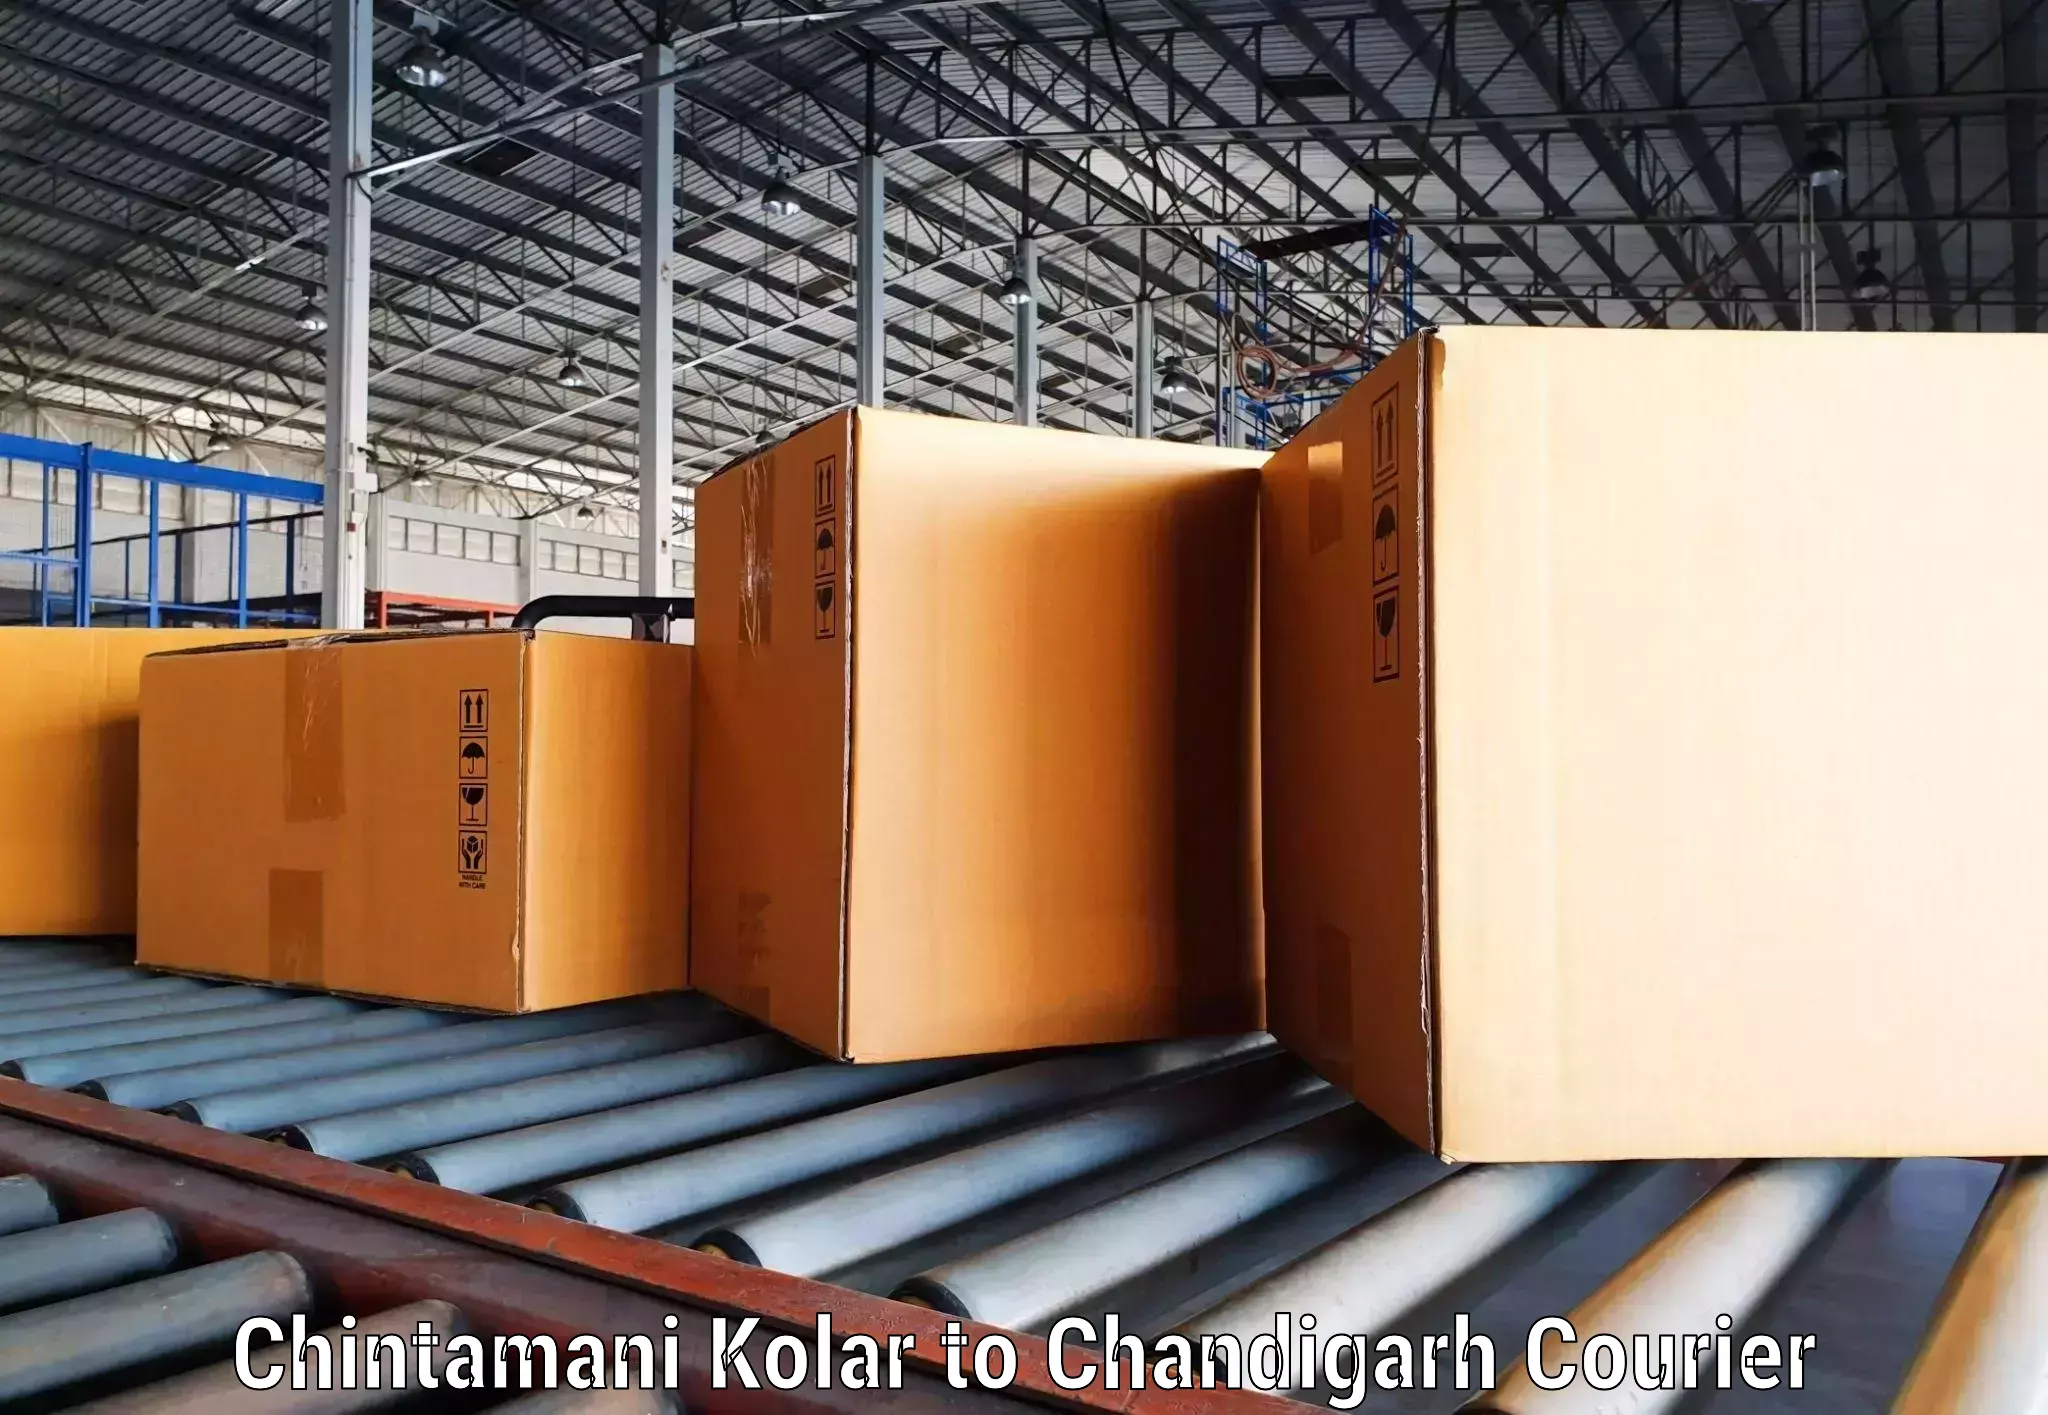 State-of-the-art courier technology Chintamani Kolar to Panjab University Chandigarh